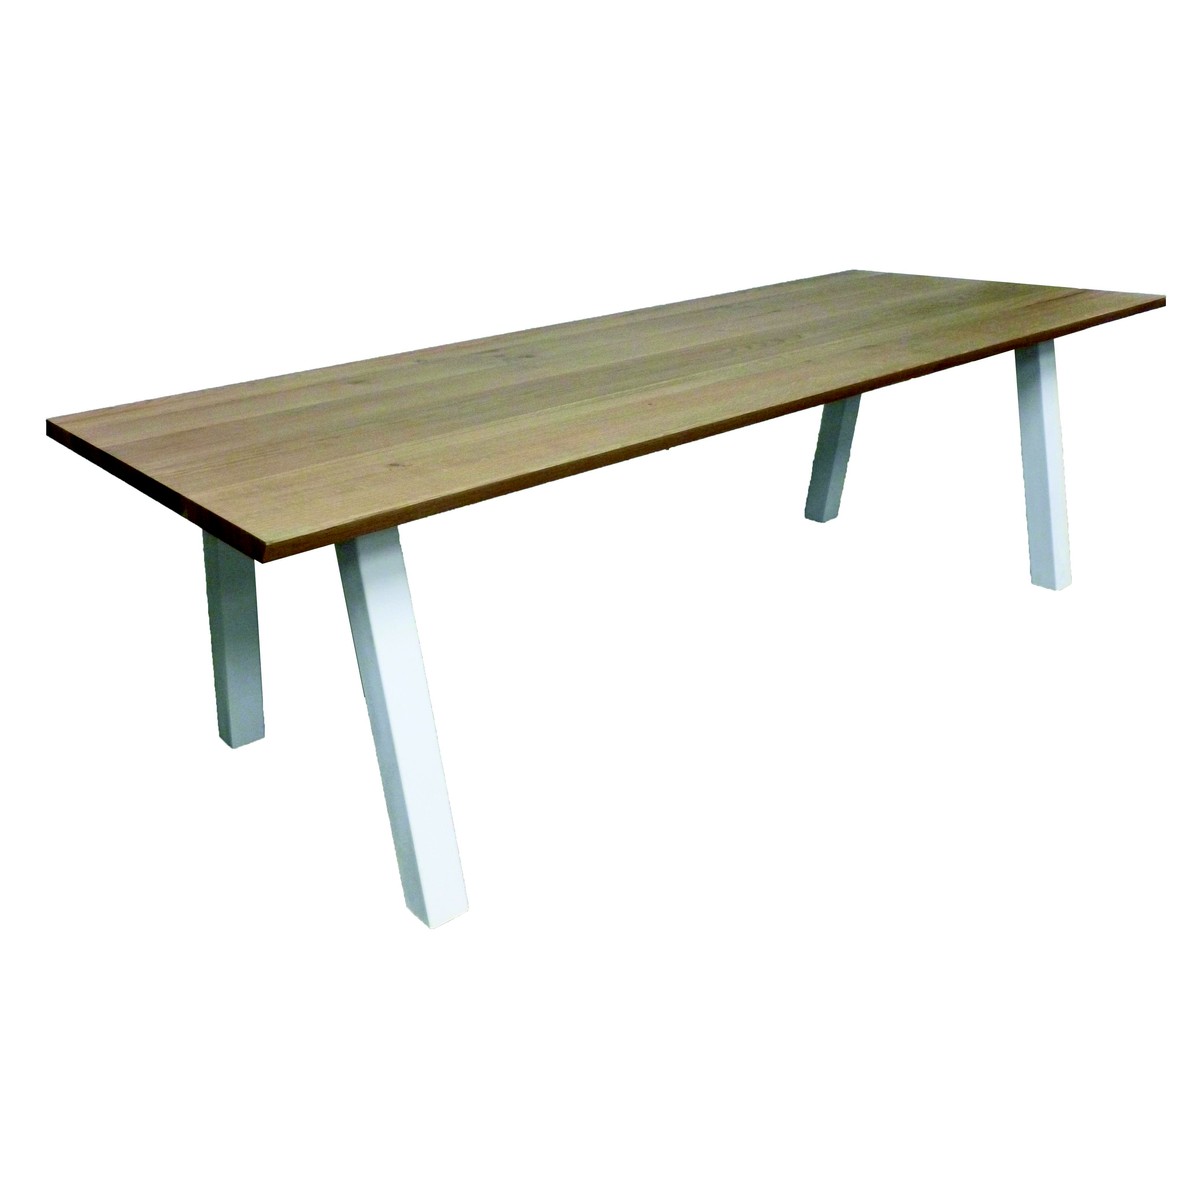   Table Aron Droit rectangulaire  160x100x77cm